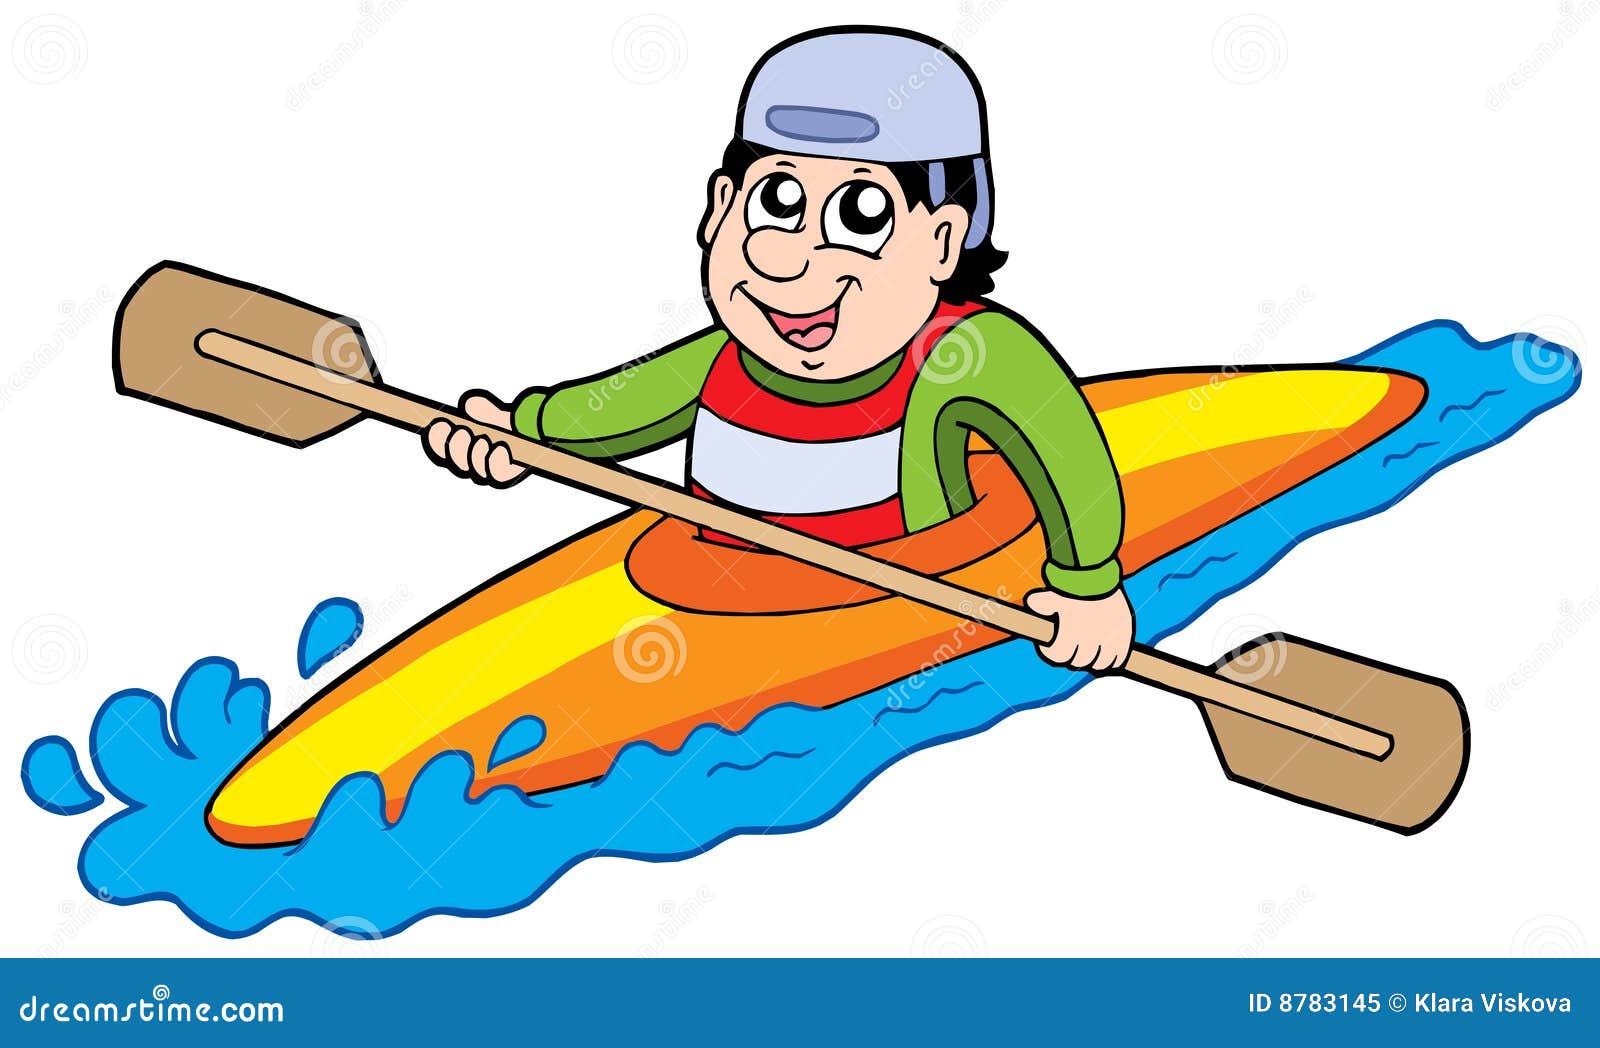 kayak cartoon clipart - photo #37